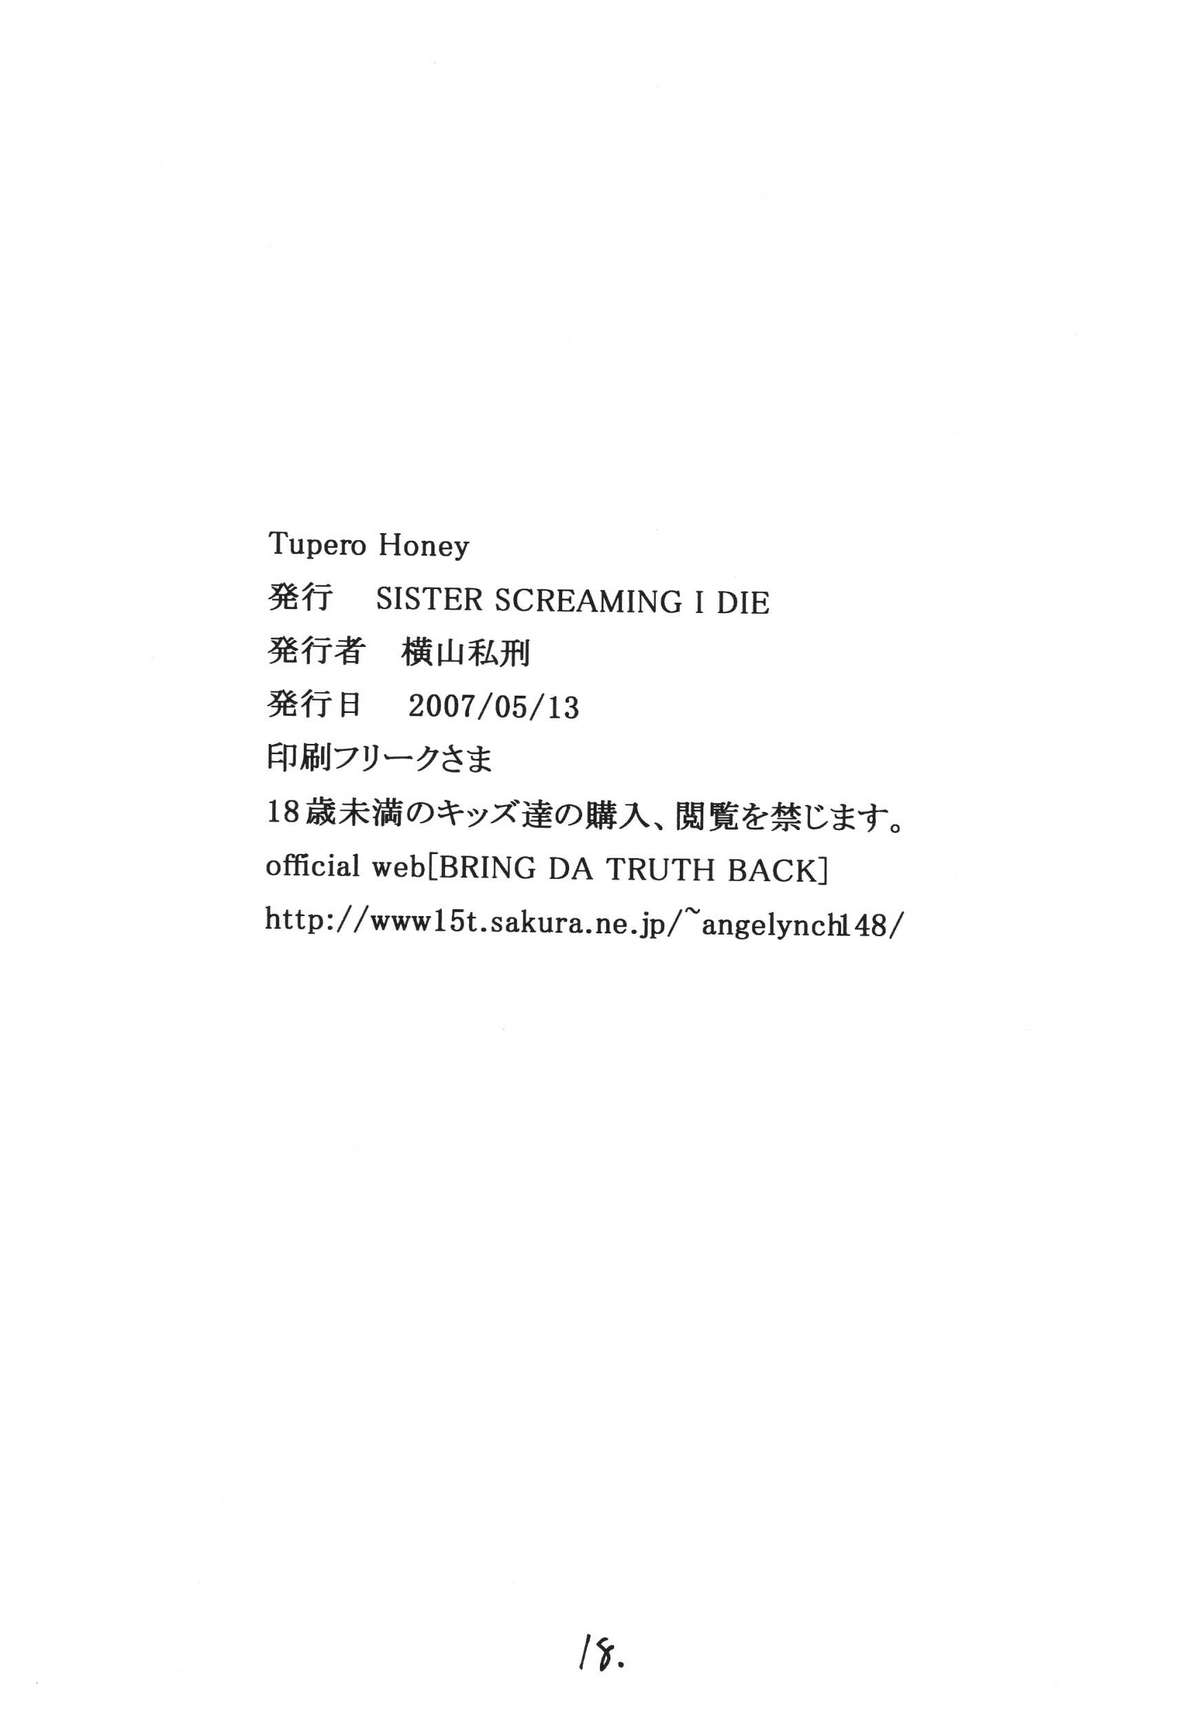 (巨乳っ娘6) [SISTER SCREAMING I DIE (横山私刑)] TUPERO HONEY (クイーンズブレイド)